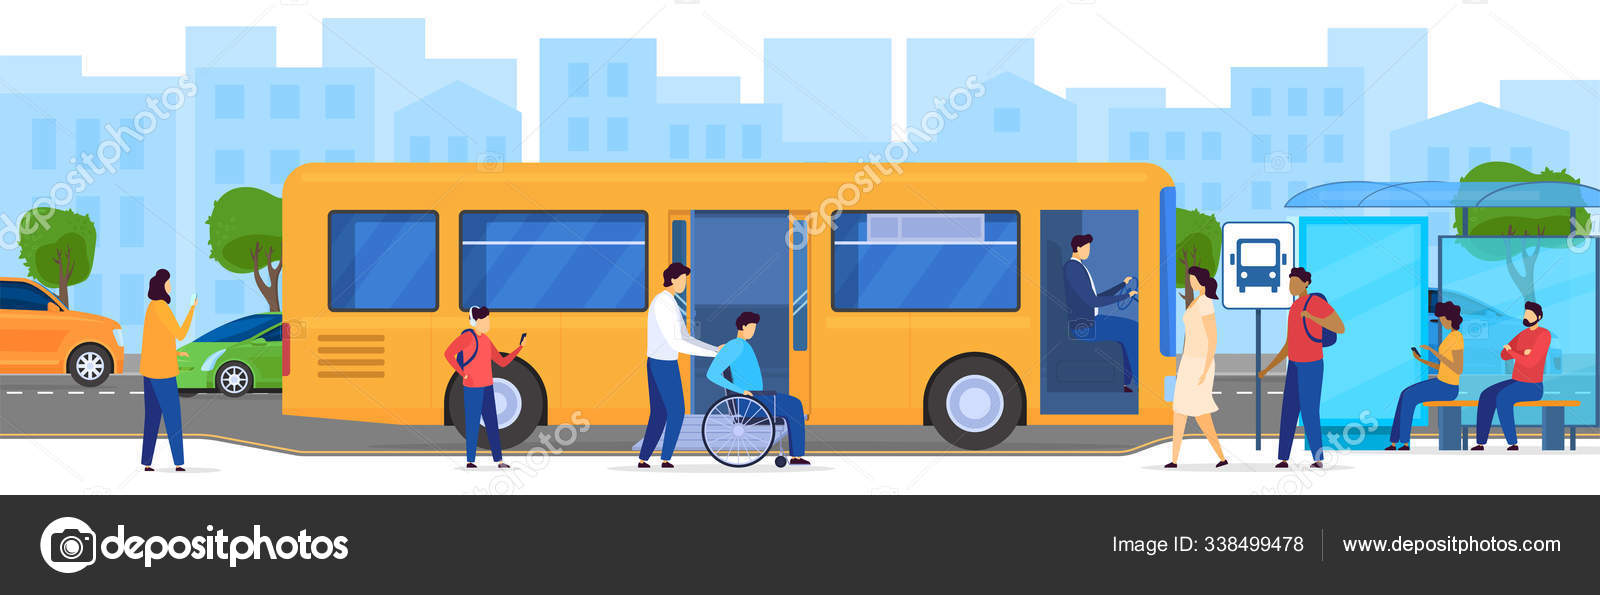 Человек остановился возле одноэтажного. Рисунок ожидай автобус на остановке. Сюжетная картинка автобусная остановка. Остановка для инвалидов. Рисунок люди стоят на основке.